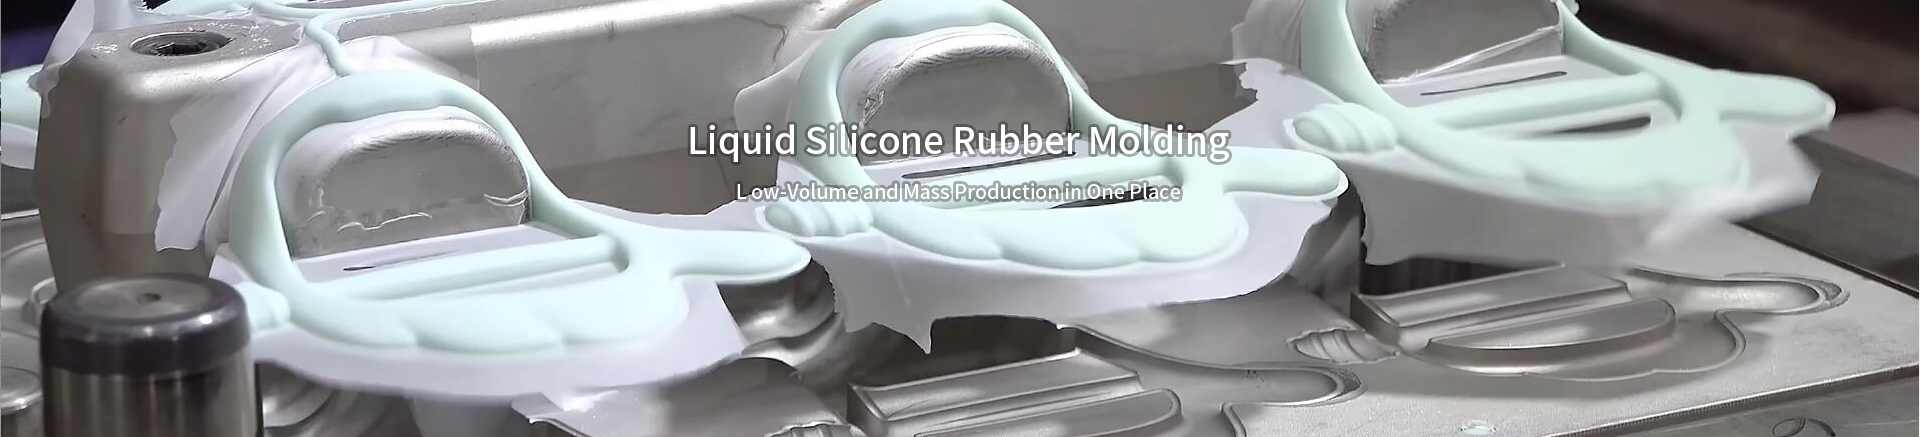 Liquid Silicone Rubber Molding